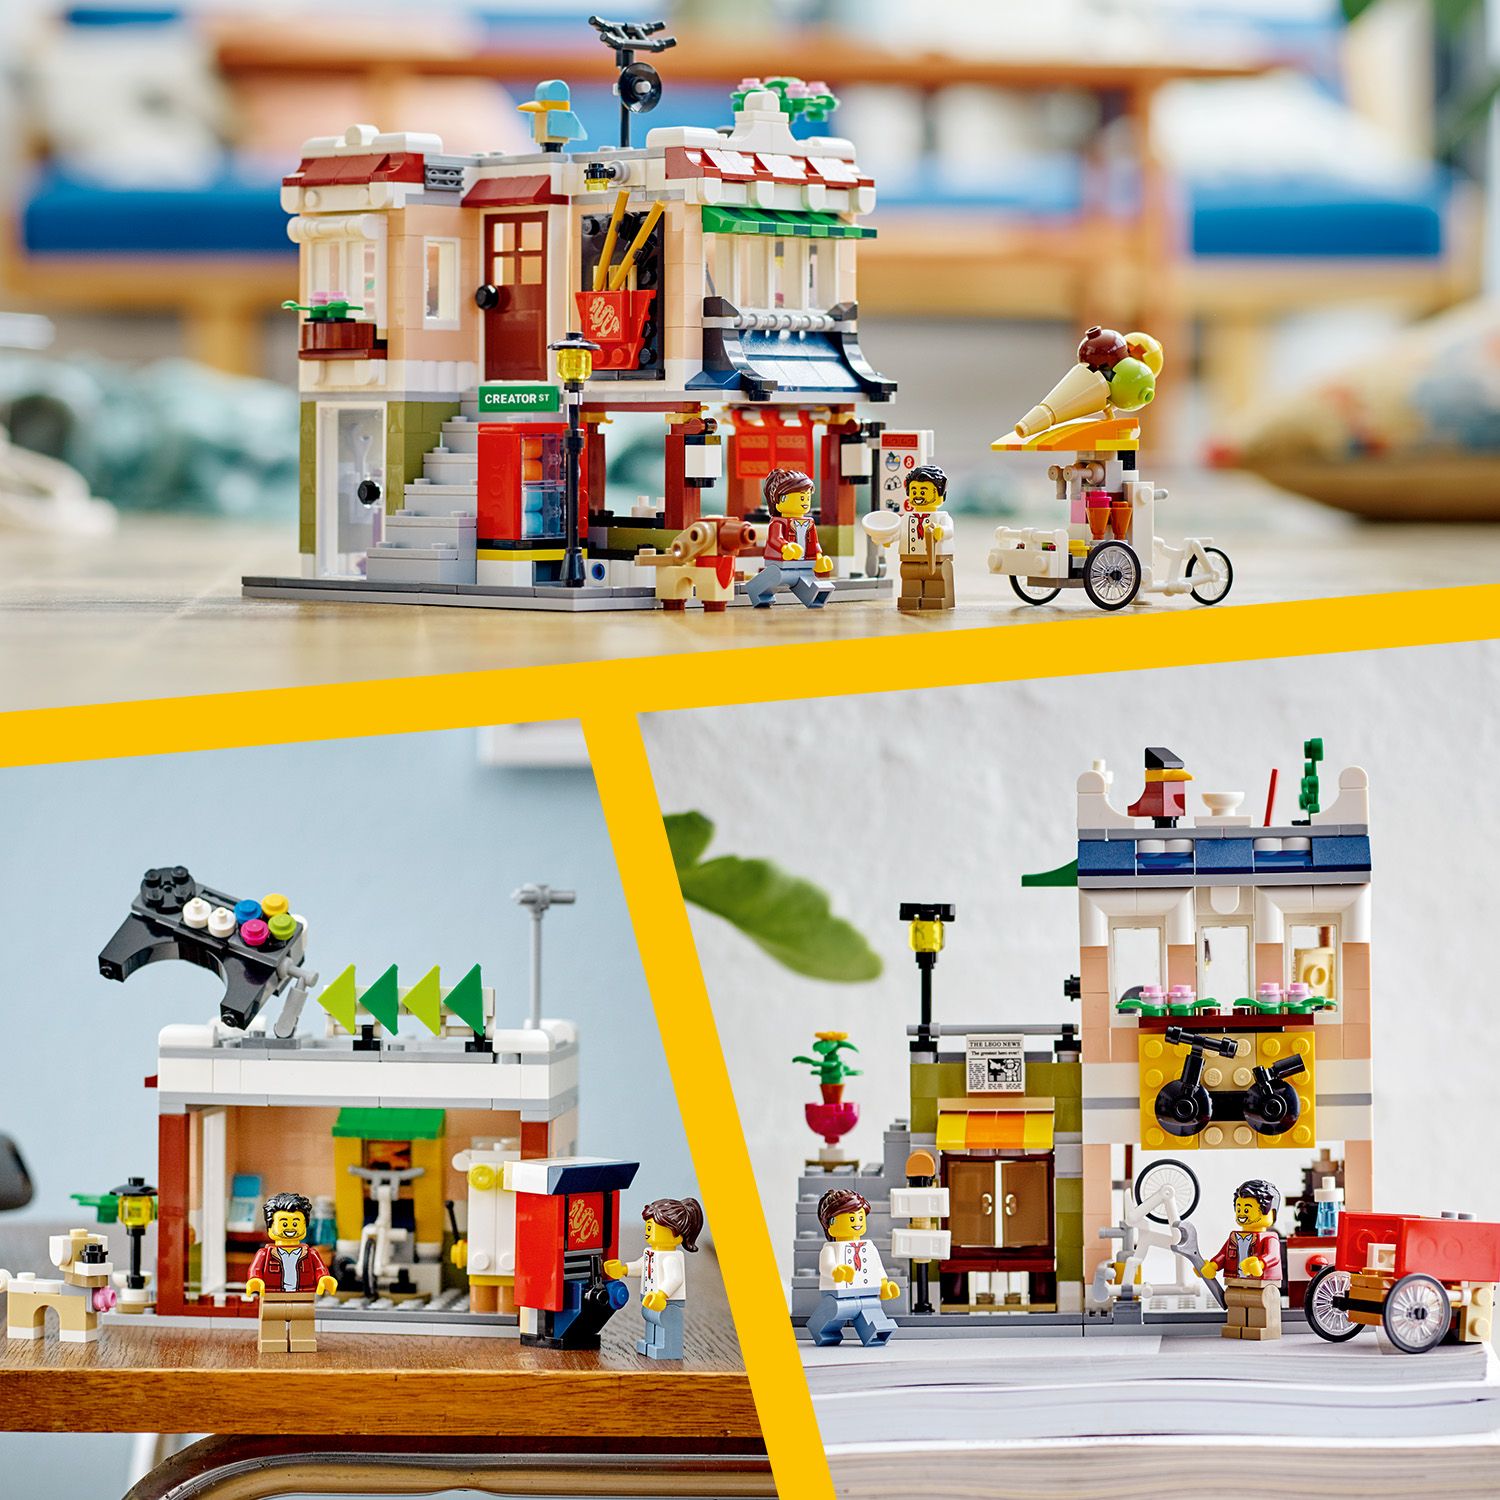 Skvělý dárek LEGO®, který zaručí hromadu zábavy.